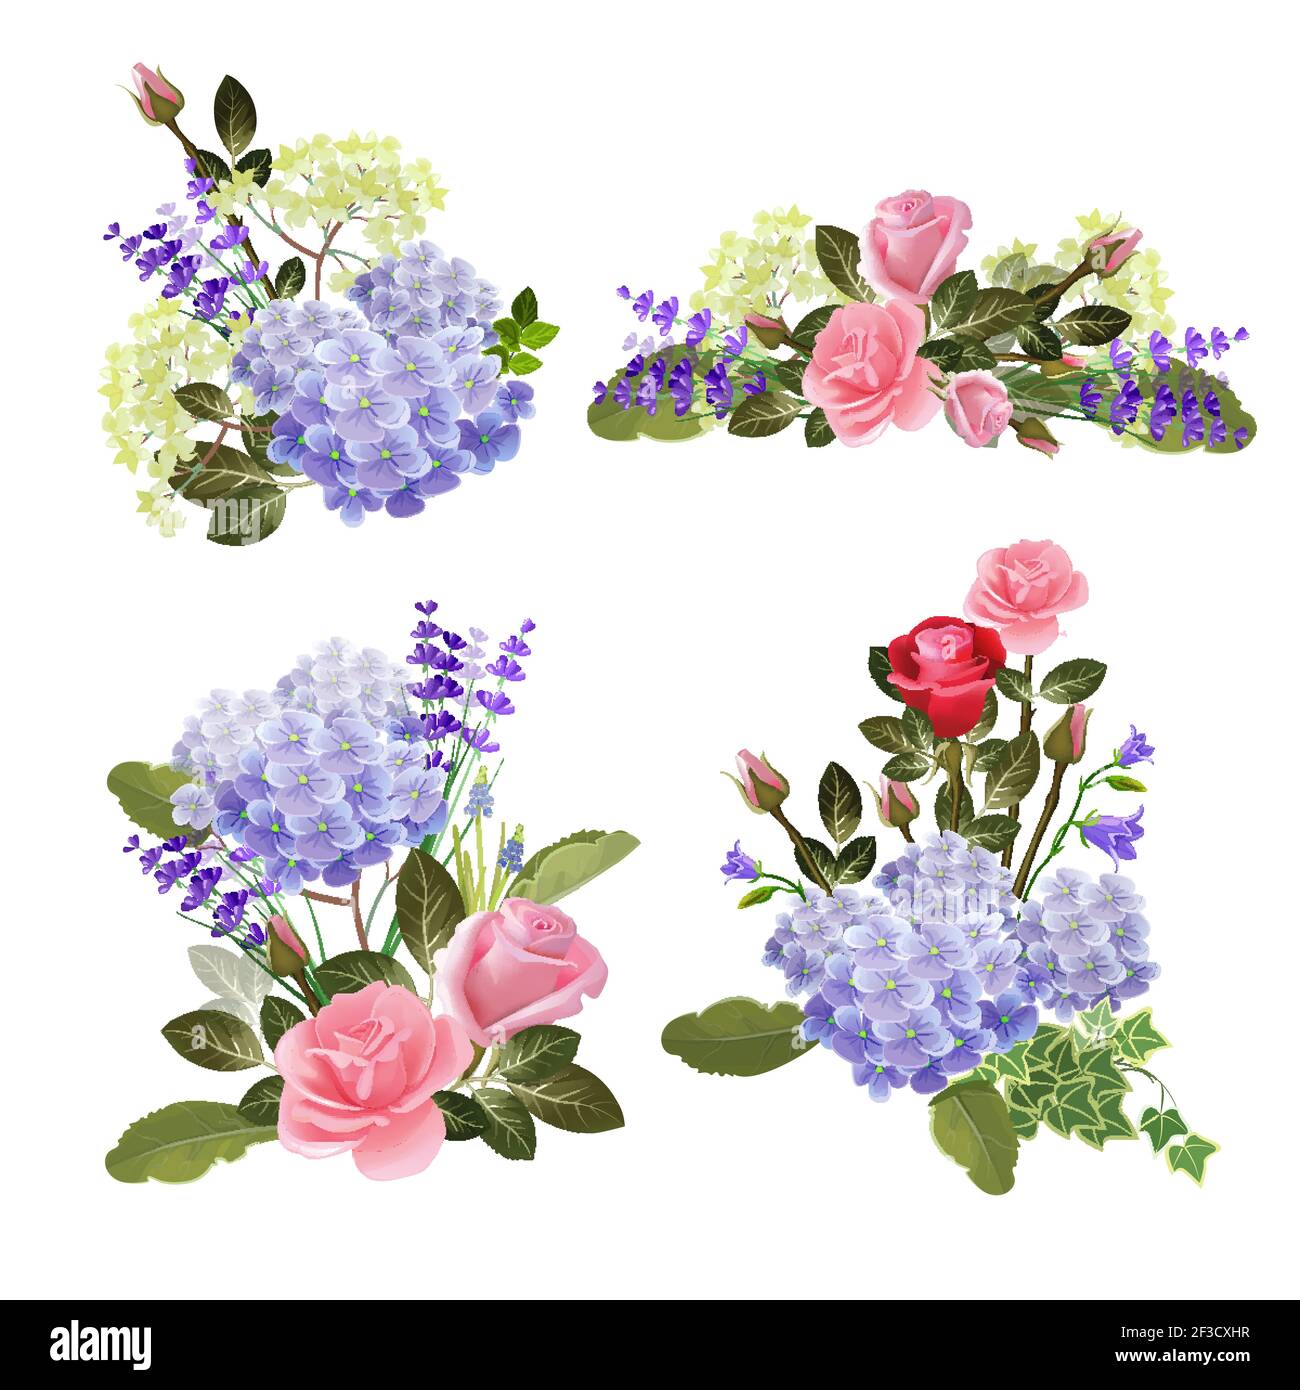 Blumenkollektion. Kräuter Natur schöne Blumensträuße stieg Vektor Cartoon Bilder Stock Vektor